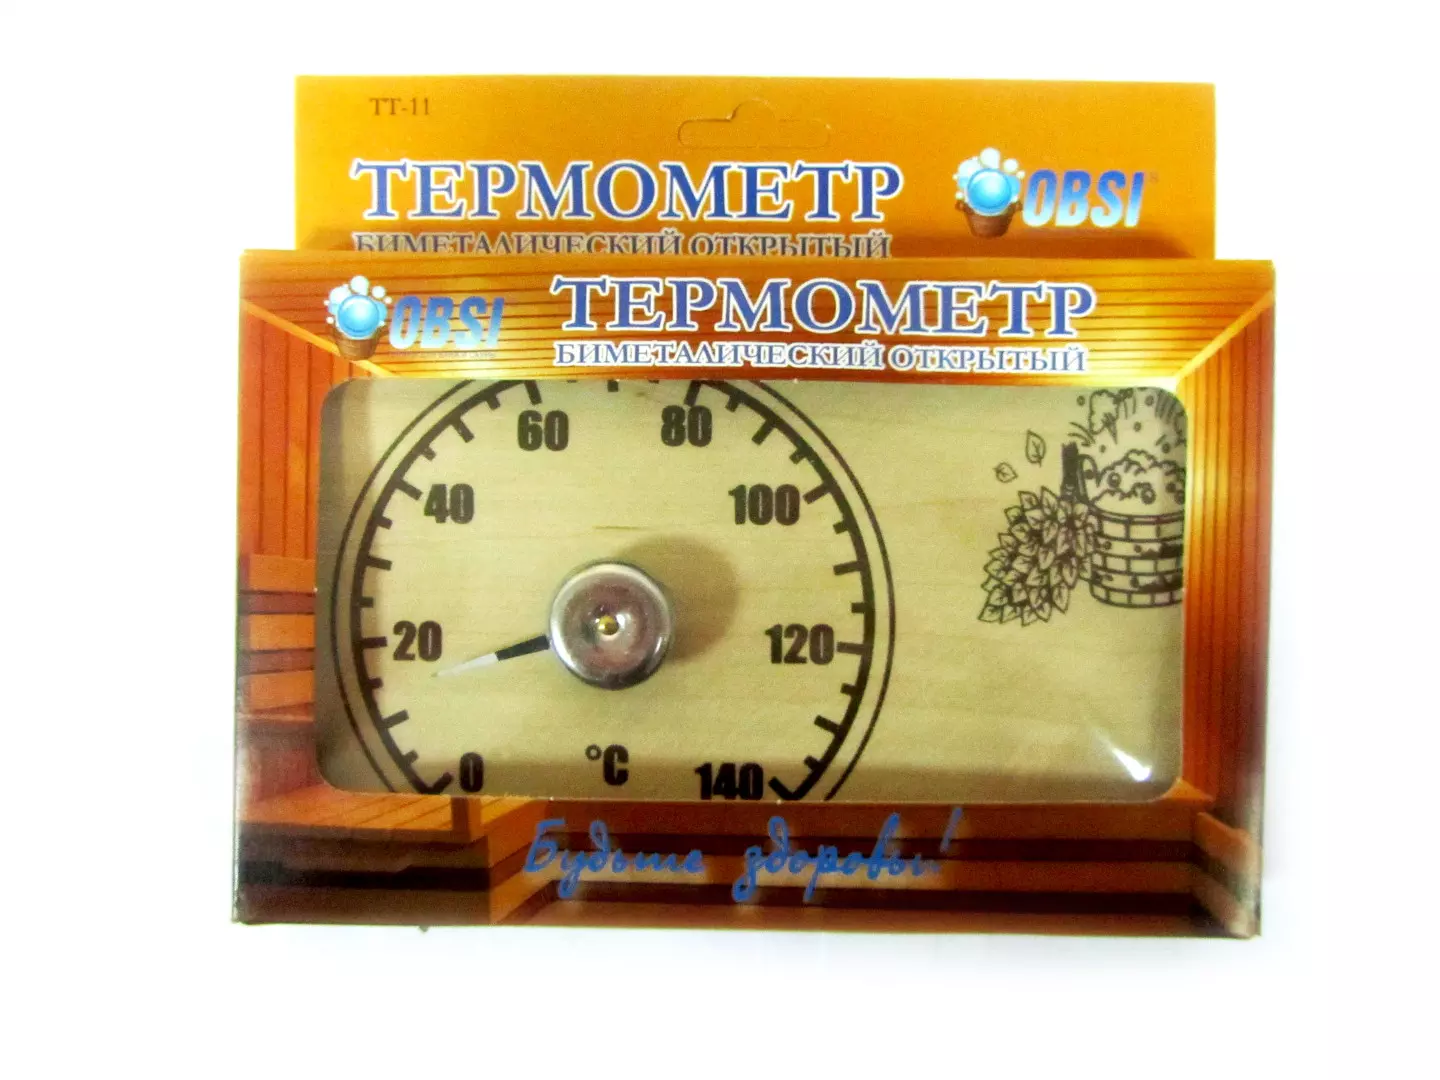 Термометр OBSI открытый, прямоугольный ТТ-11